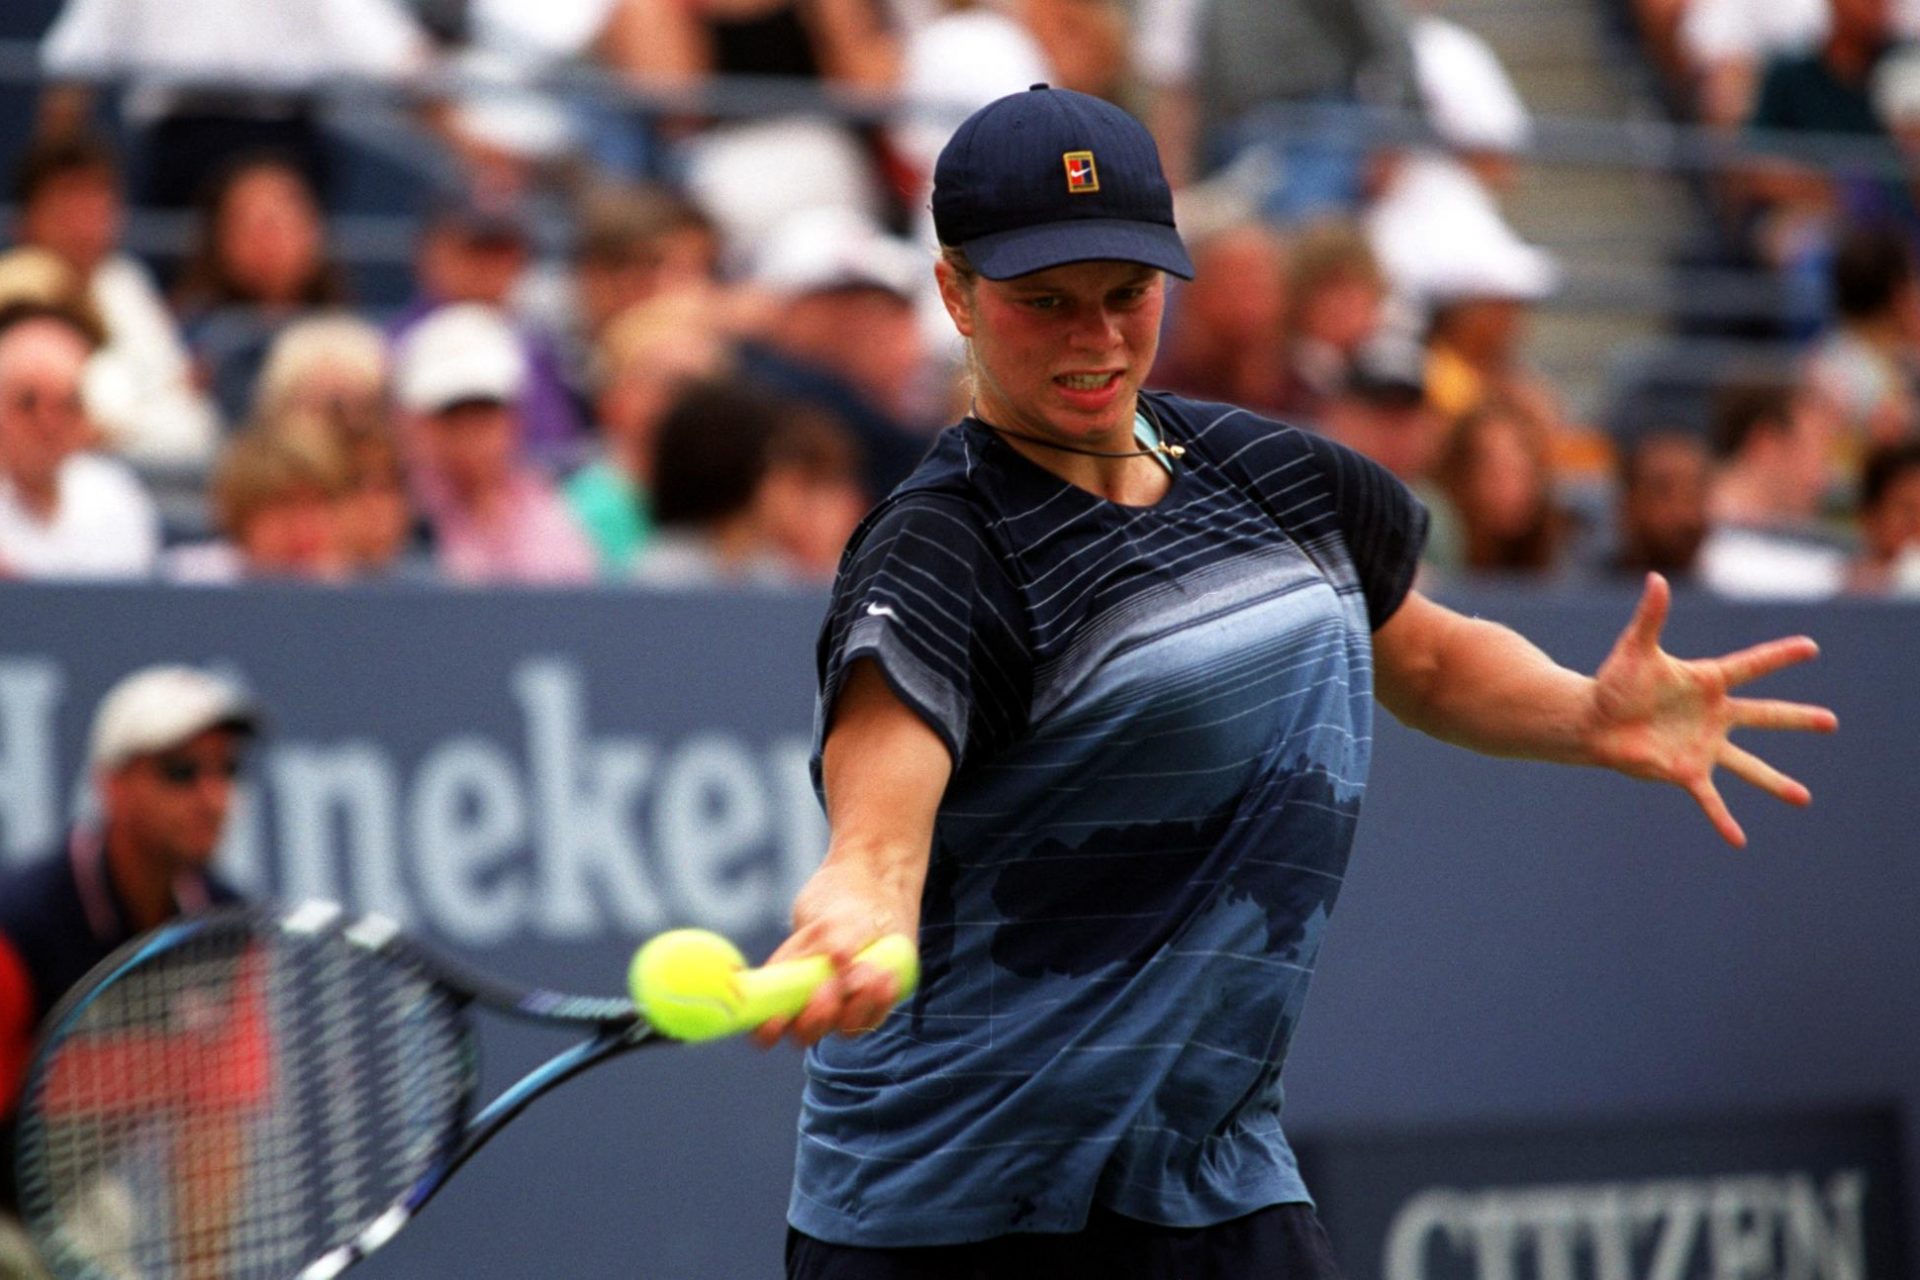 <p>En 1997, Clijsters debutó en el circuito profesional. En el torneo ITF en la ciudad costera de Bélgica, Koksijde, la tenista alcanzó rápidamente los cuartos de final a la edad de 14 años.</p>